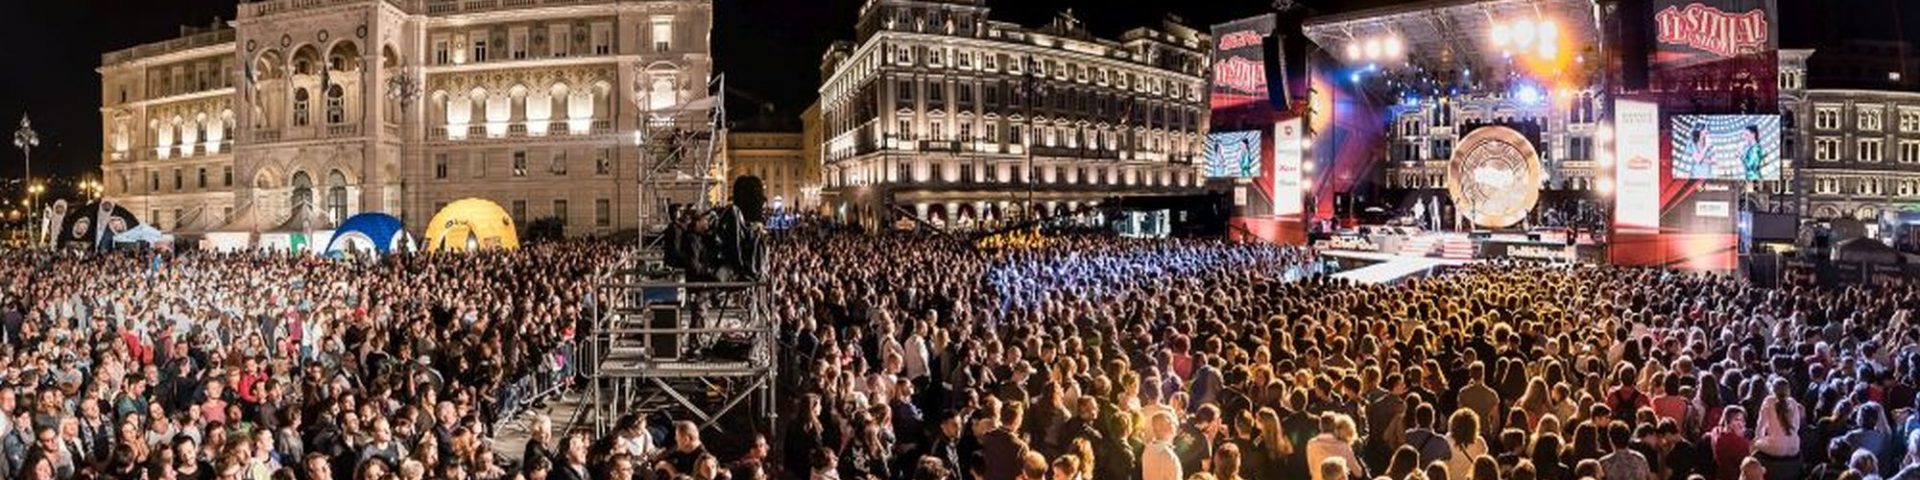 Festival Show 2018: a Trieste l'epilogo di un'estate a suon di musica - Video